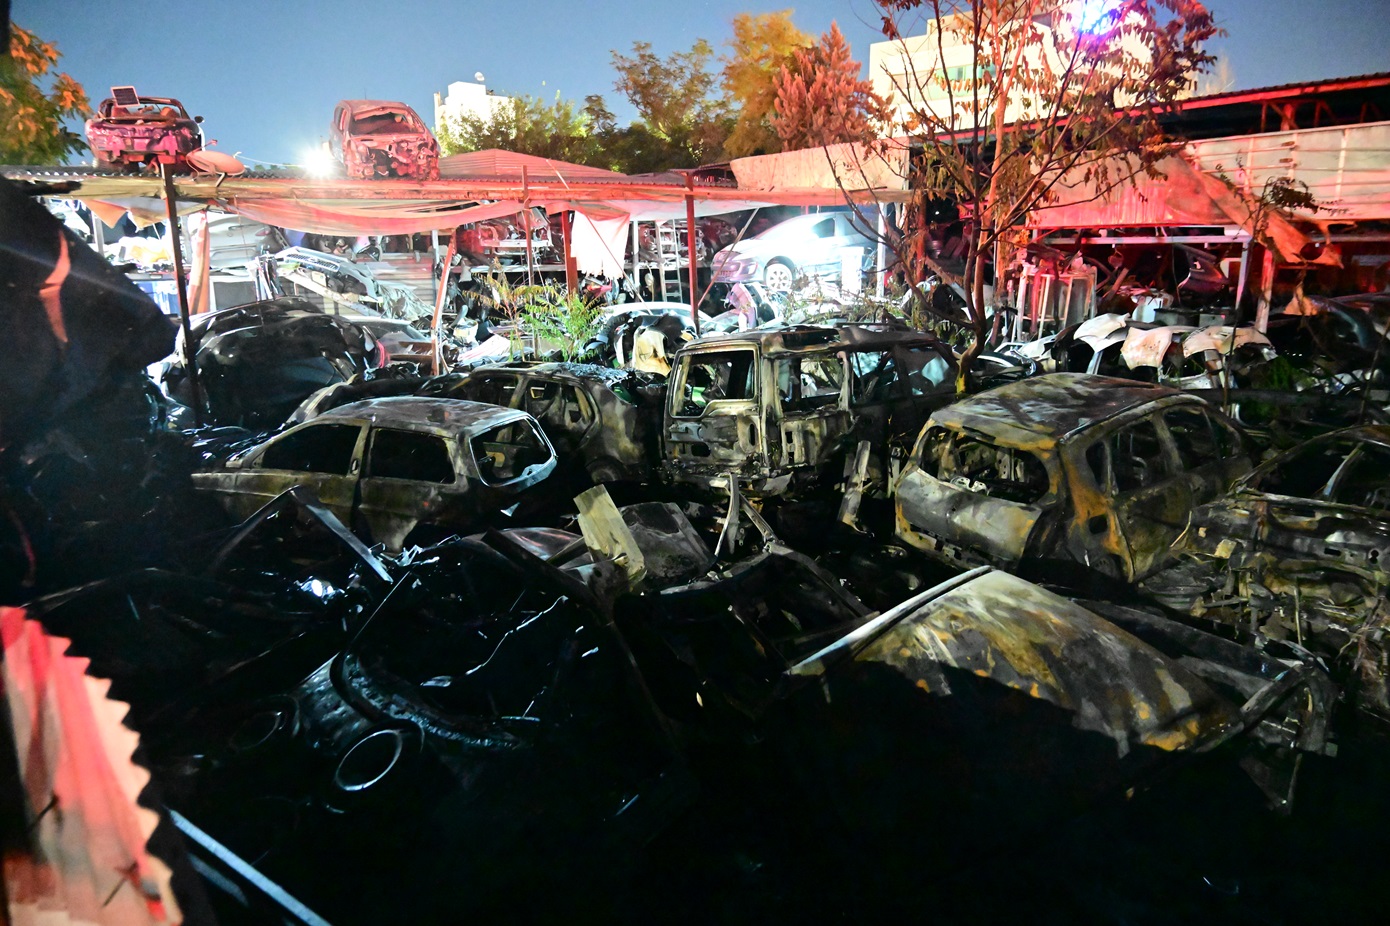 Έσβησε η φωτιά στη μάντρα αυτοκινήτων στους Αγίους Αναργύρους – Κάηκαν πολλά αυτοκίνητα